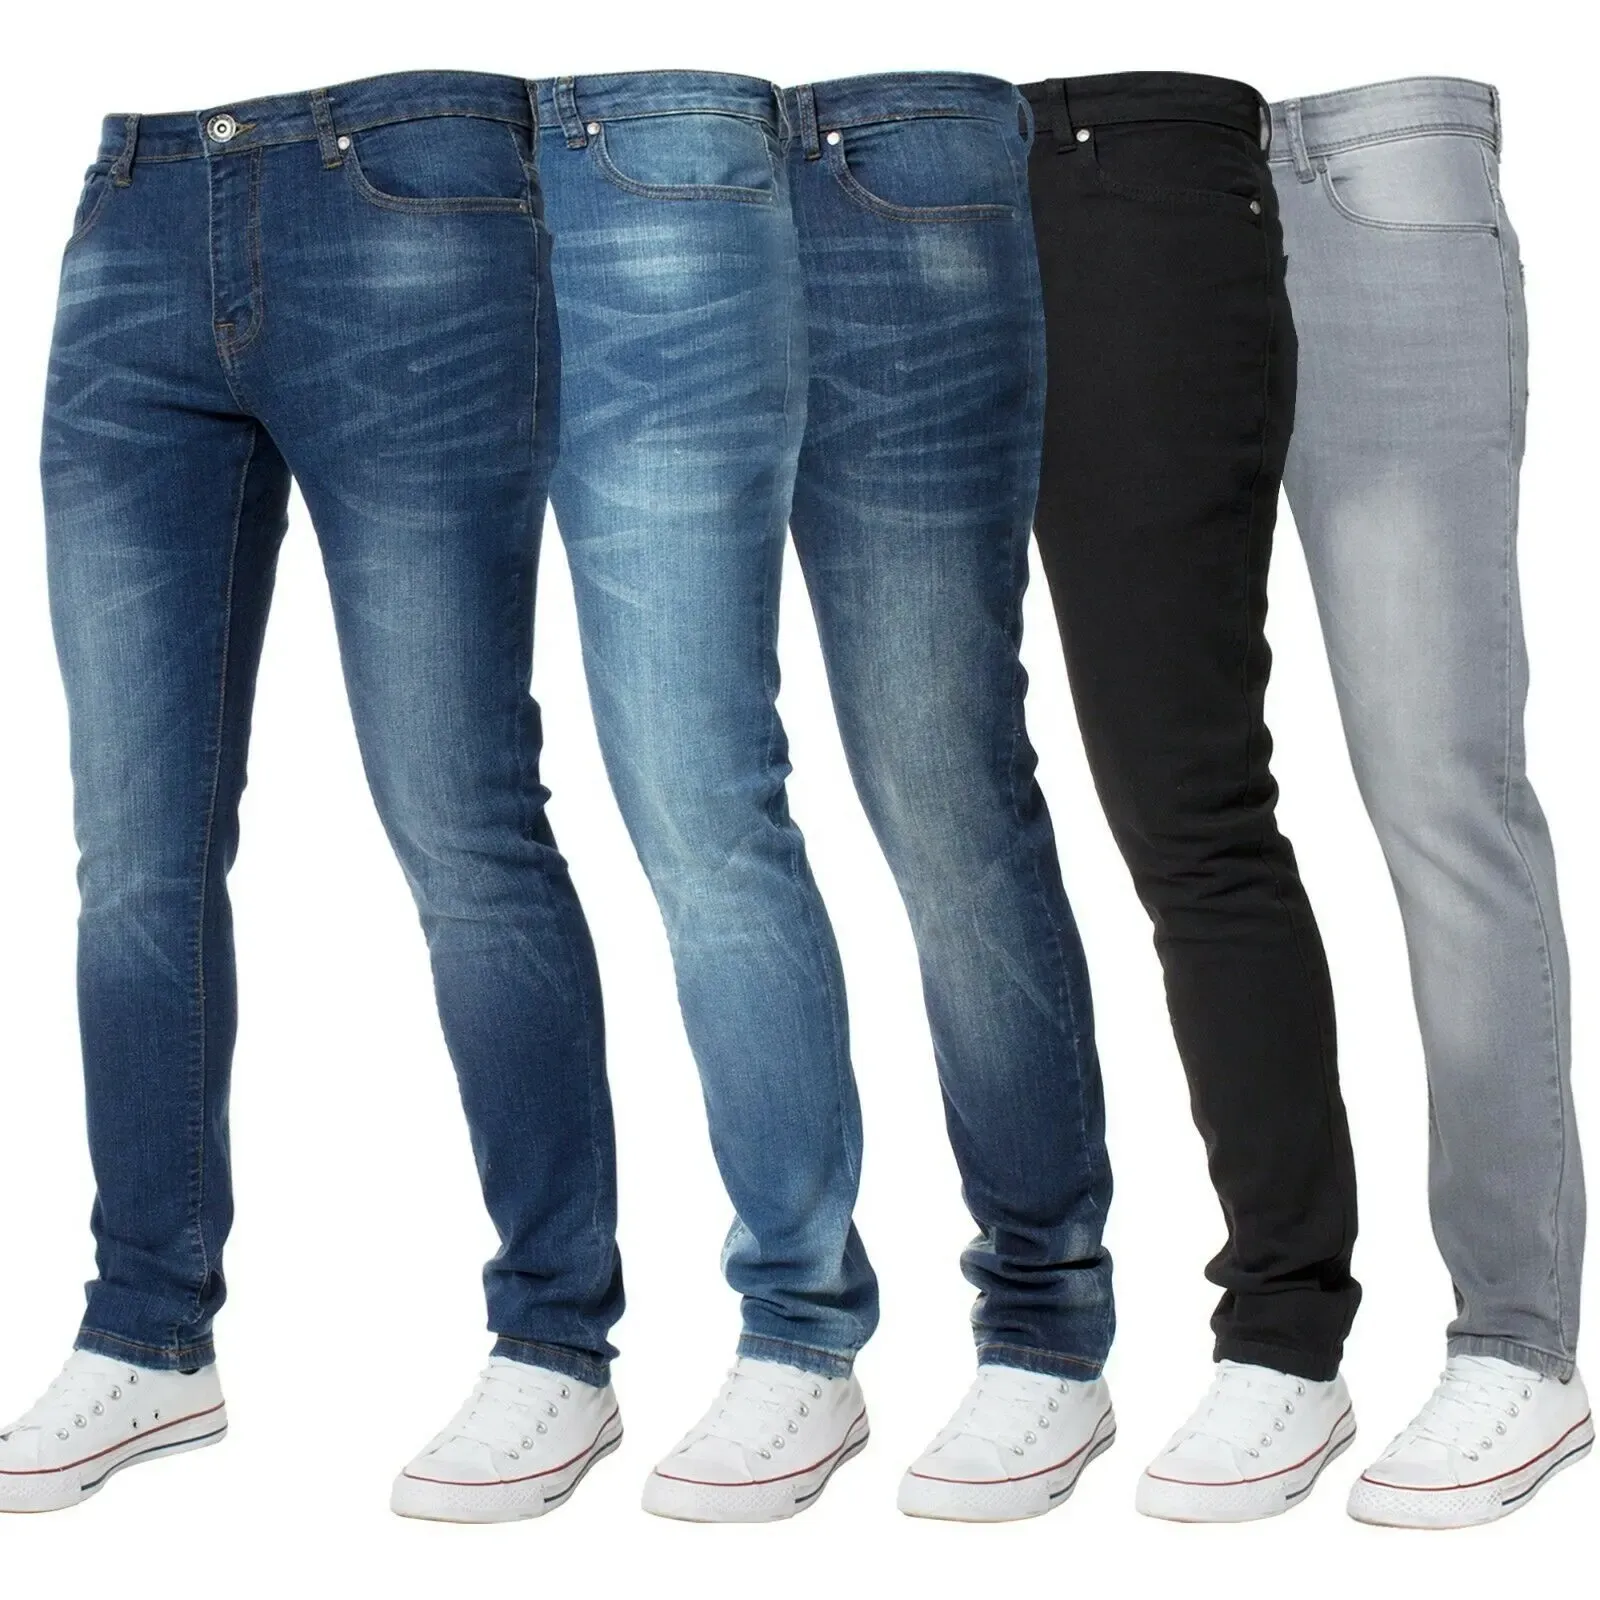 Fornecedor de marcas internacionais --- calças jeans masculinas justas jeans personalizadas jeans masculinas jeans rasgados